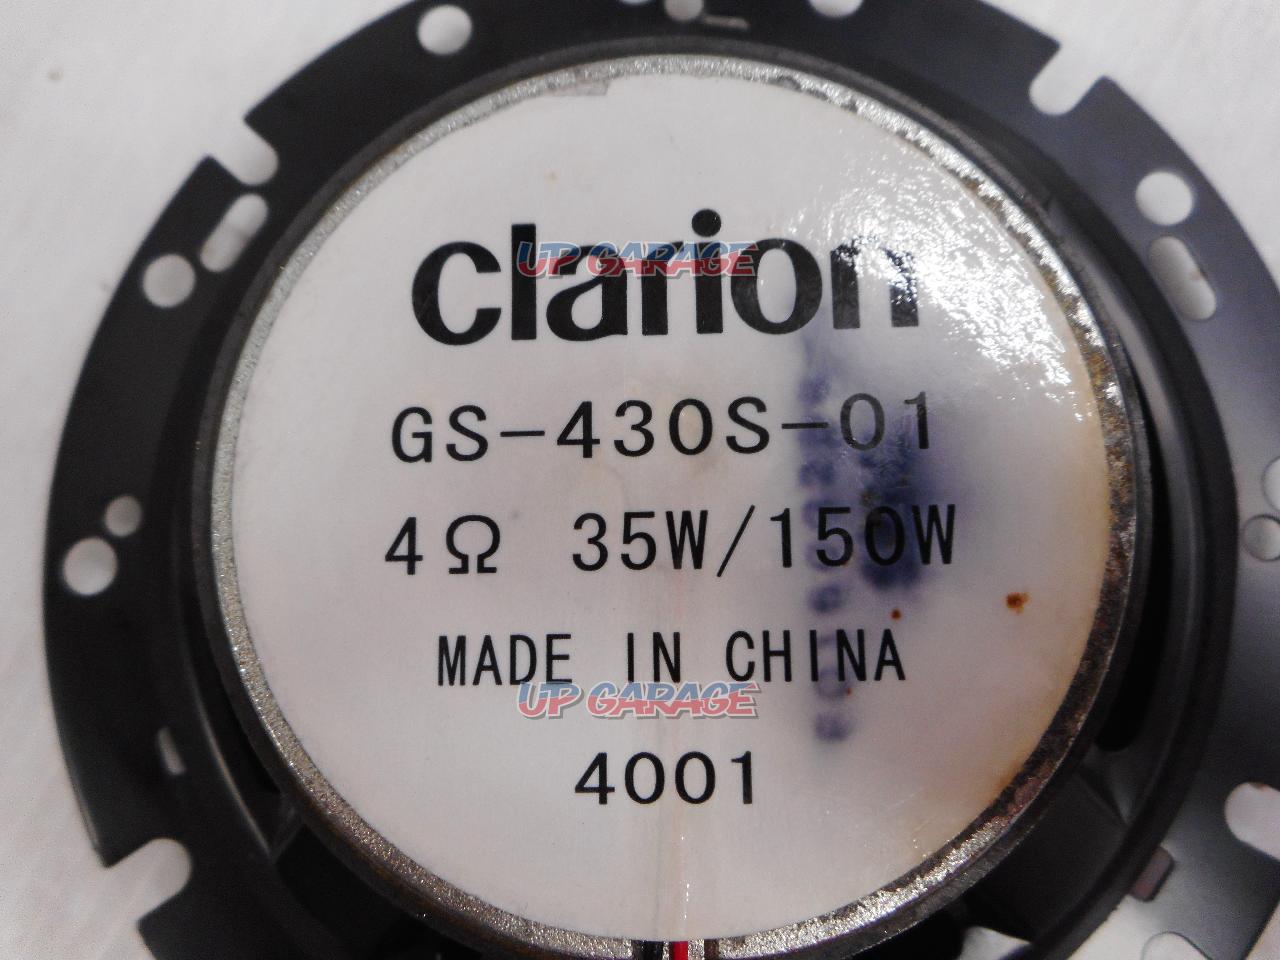 Clarion(スズキ純正OP) GS-430S-01 【☆16cmコアキシャル2ウェイ